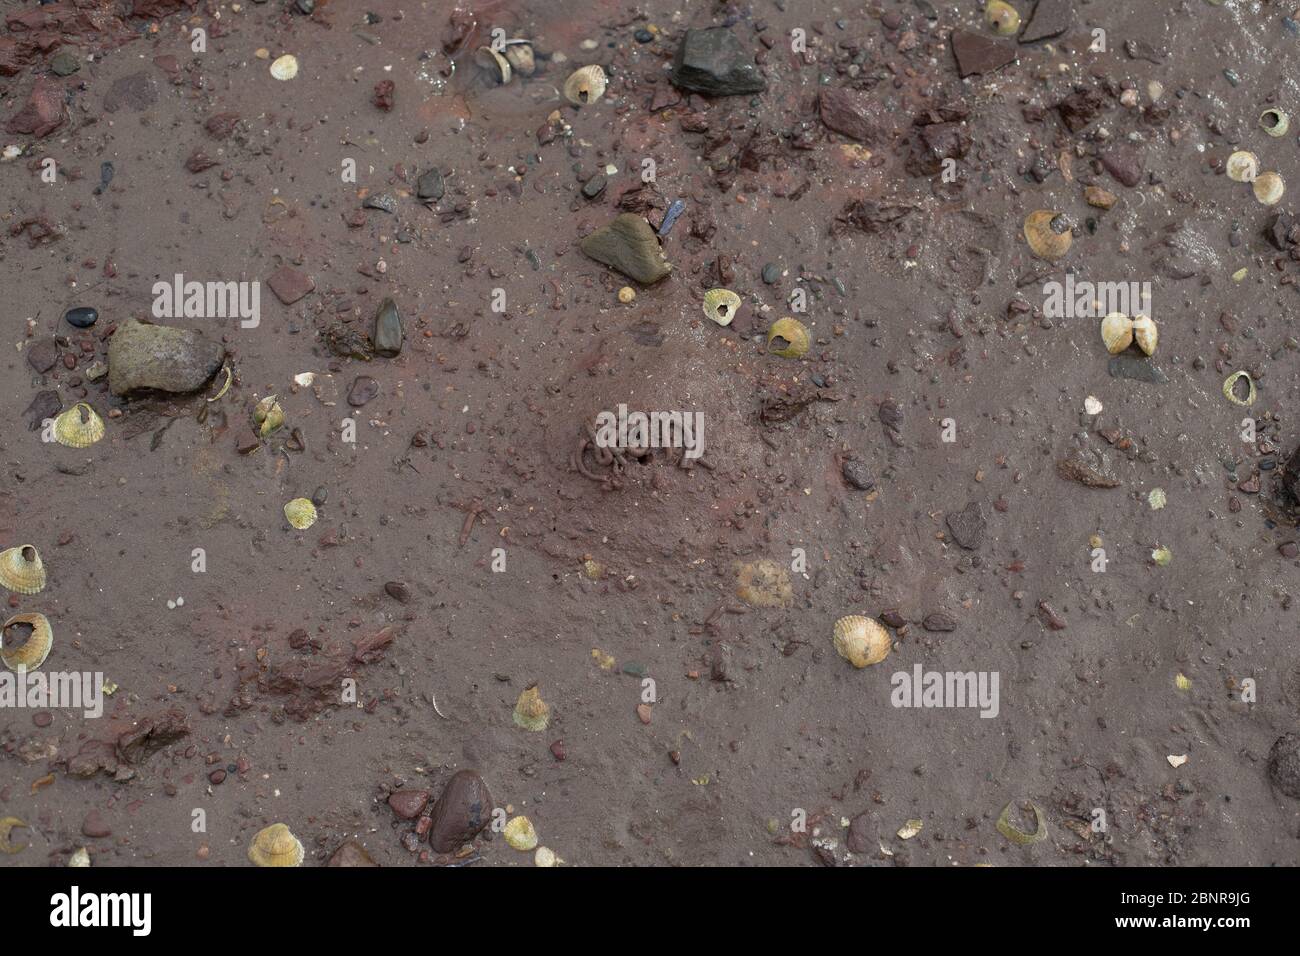 Worm cast on muddy beach. Stock Photo